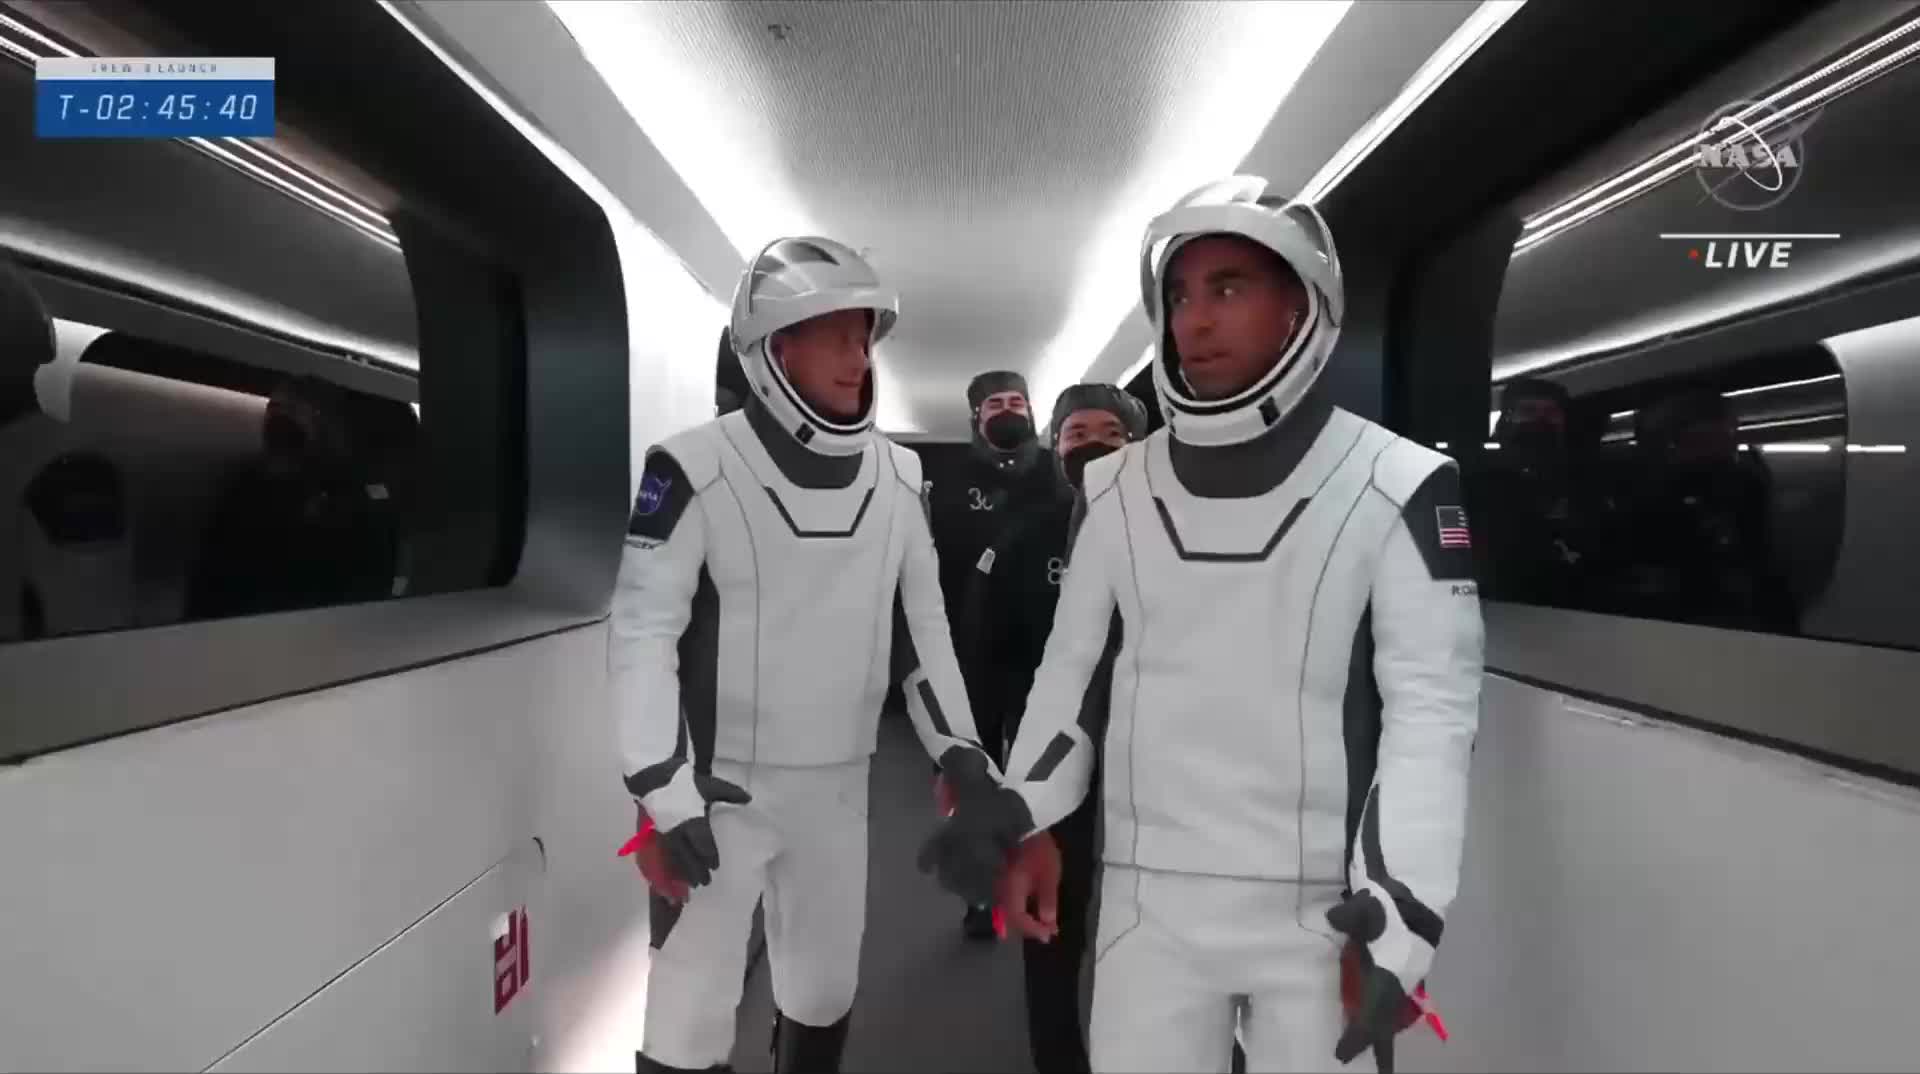 【中文】Crew-3 宇航员登机进入龙飞船的过程